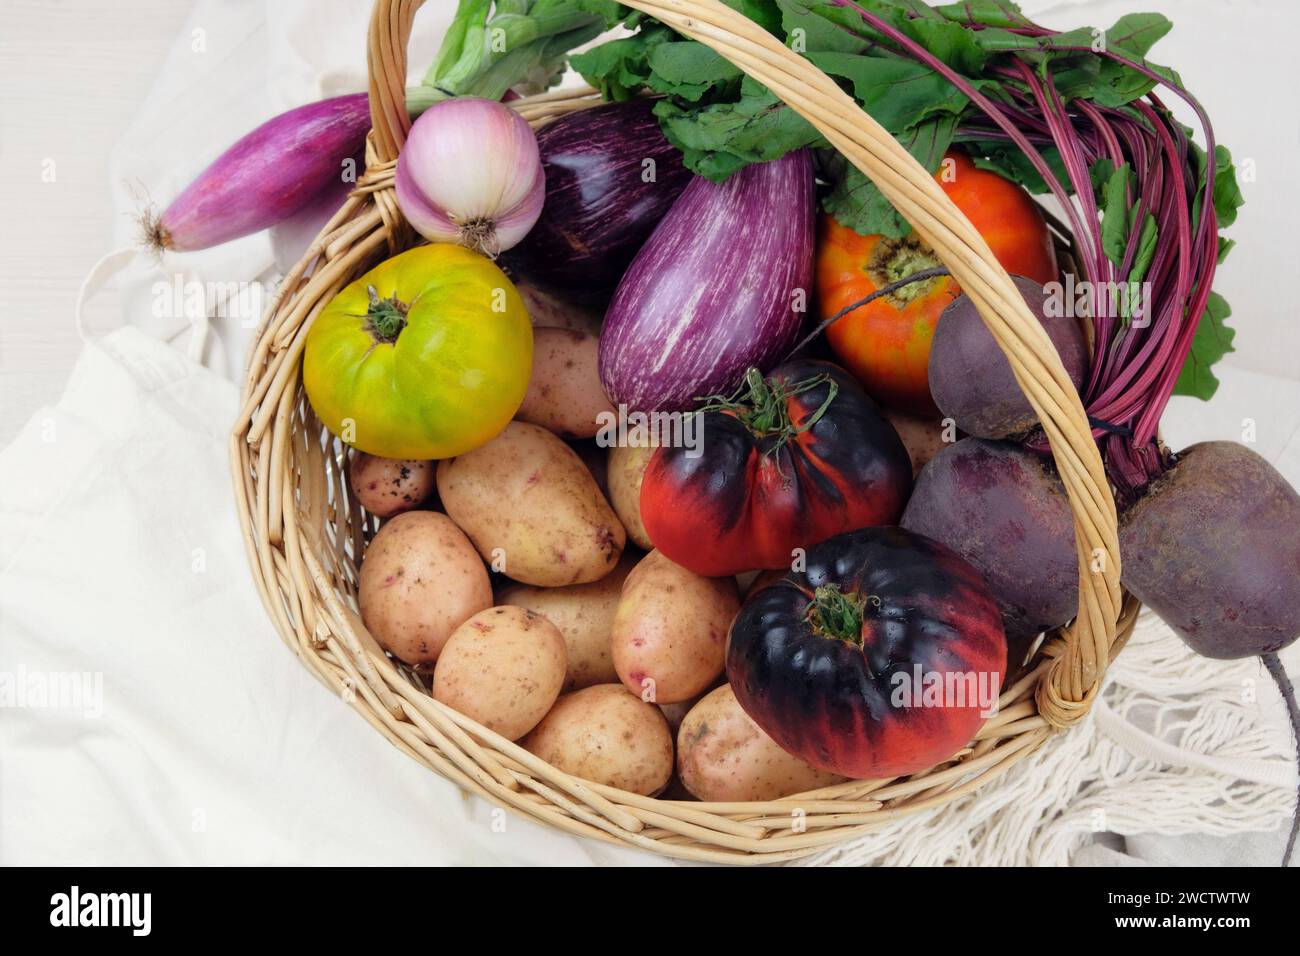 Panier avec divers légumes. Pommes de terre, betteraves, tomates, échalotes, aubergines. Style campagnard. Banque D'Images